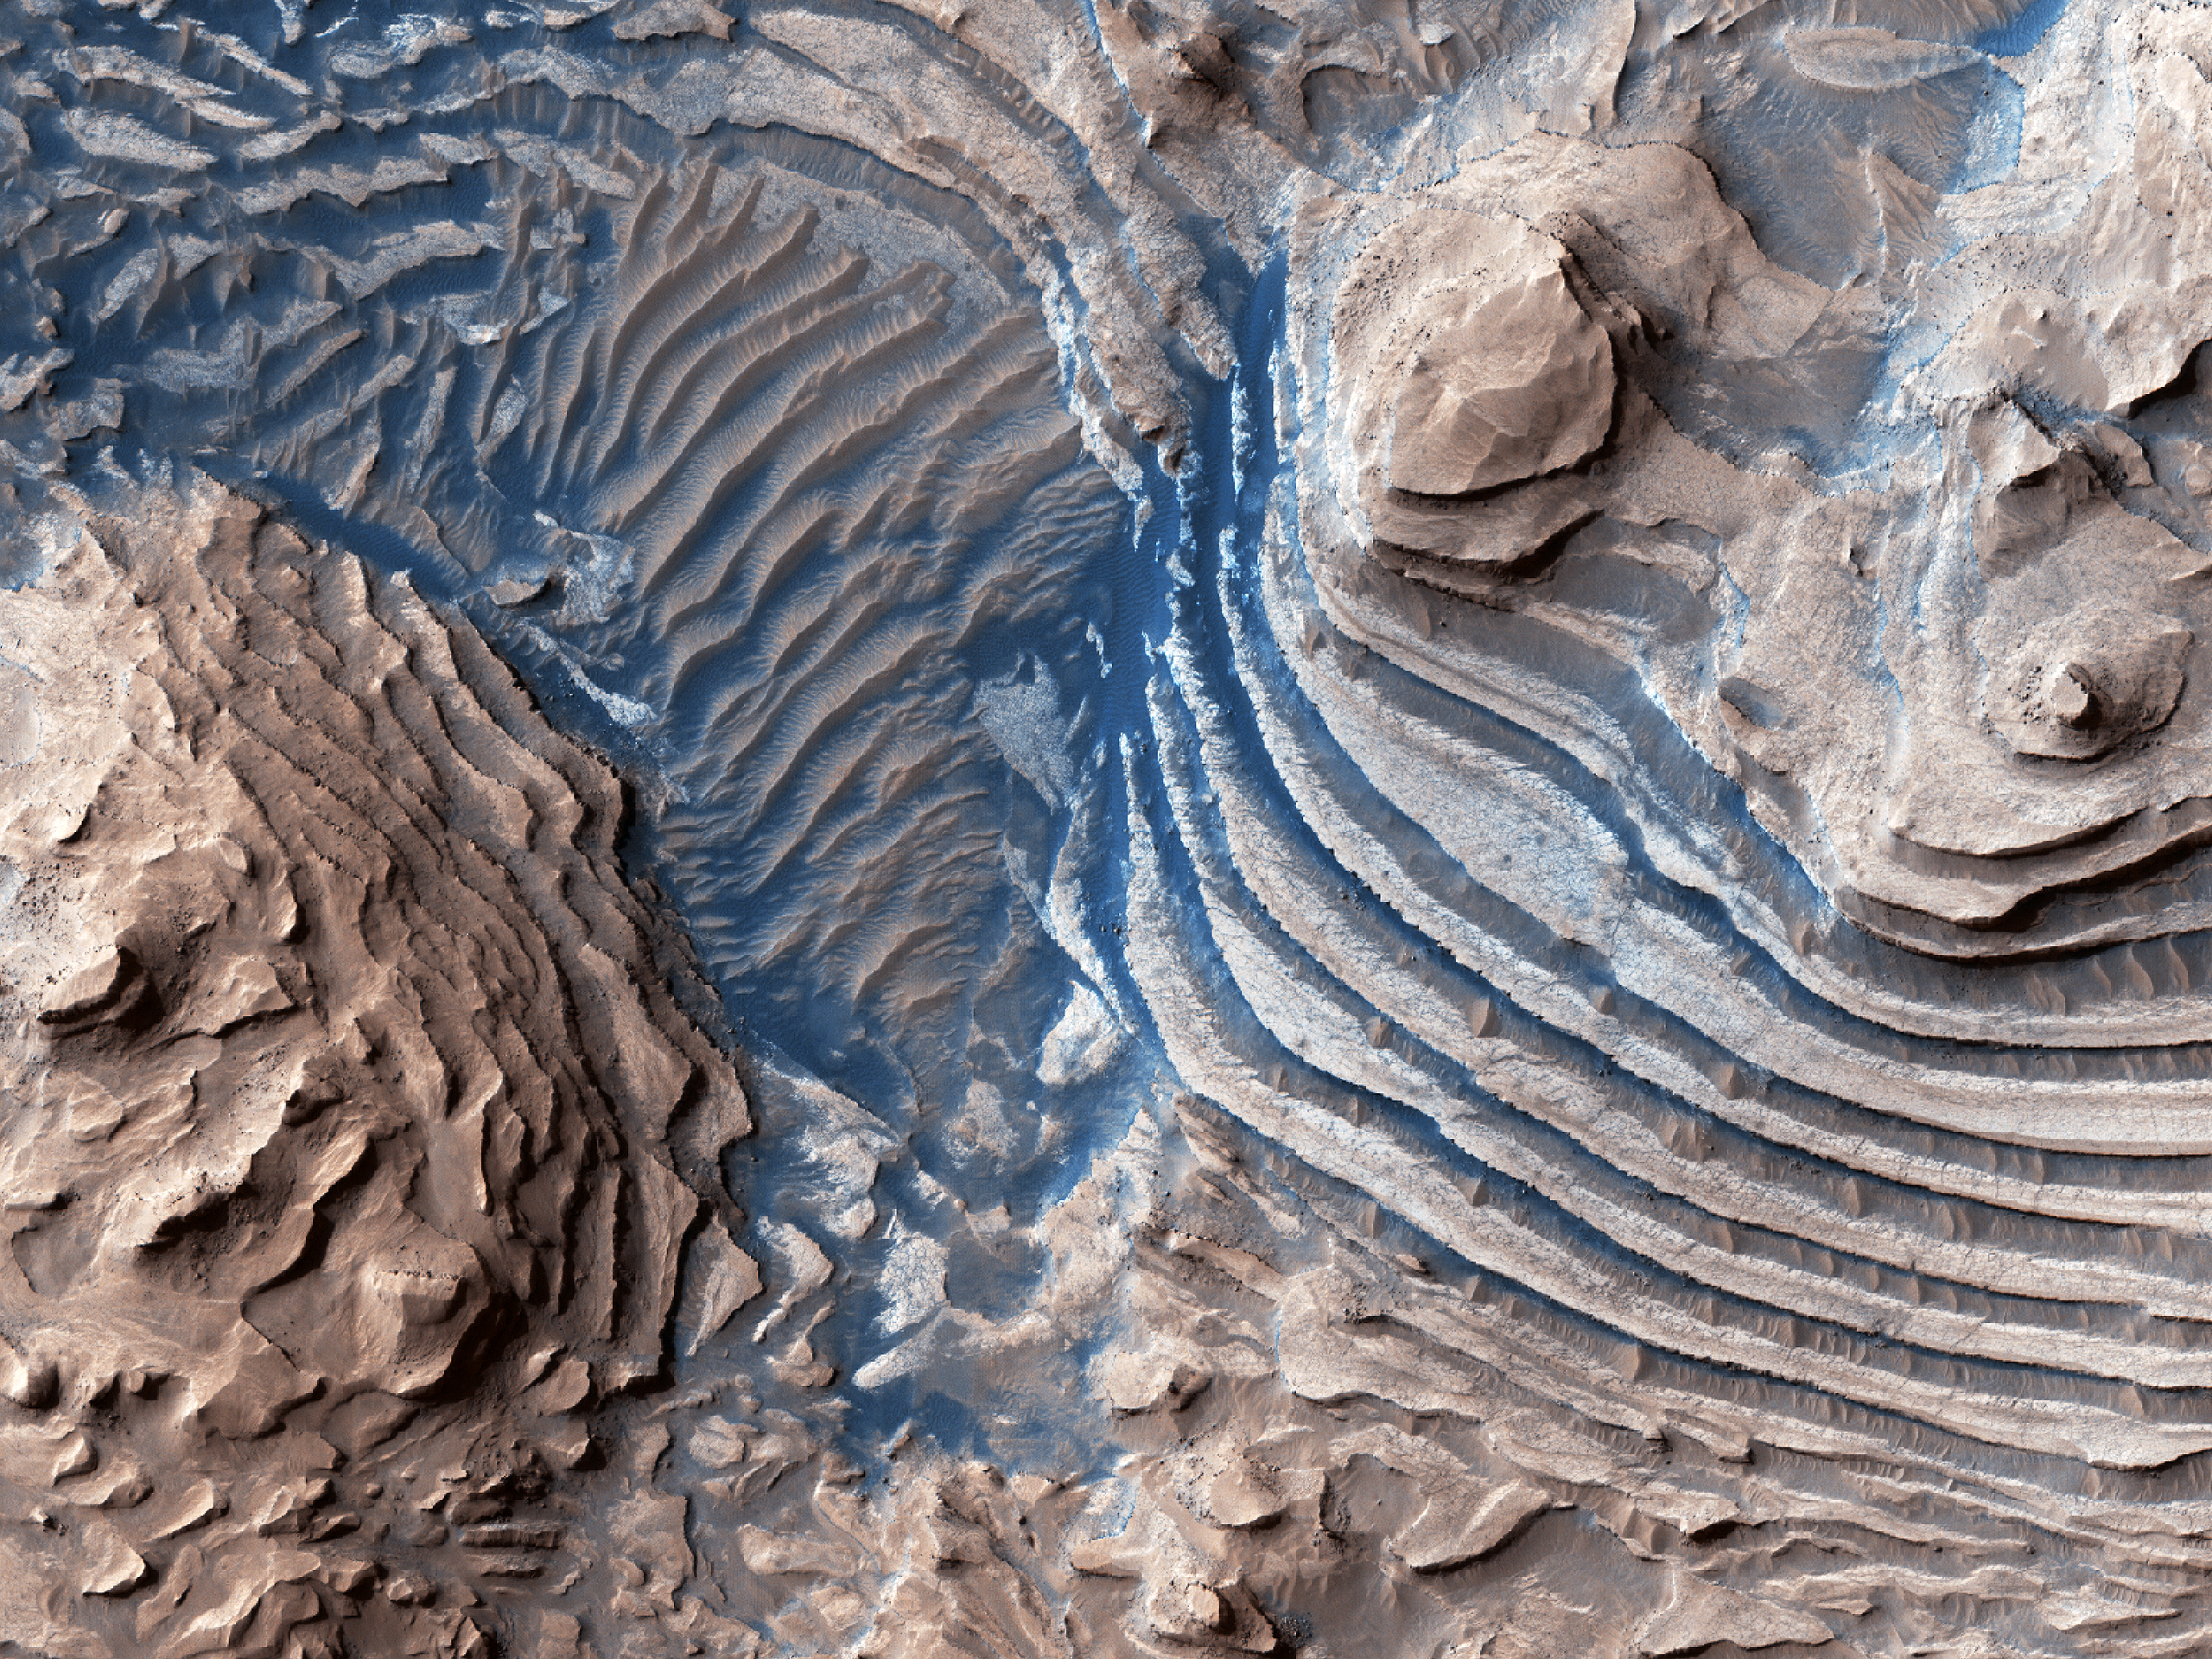 Meridiani Planum region of Mars